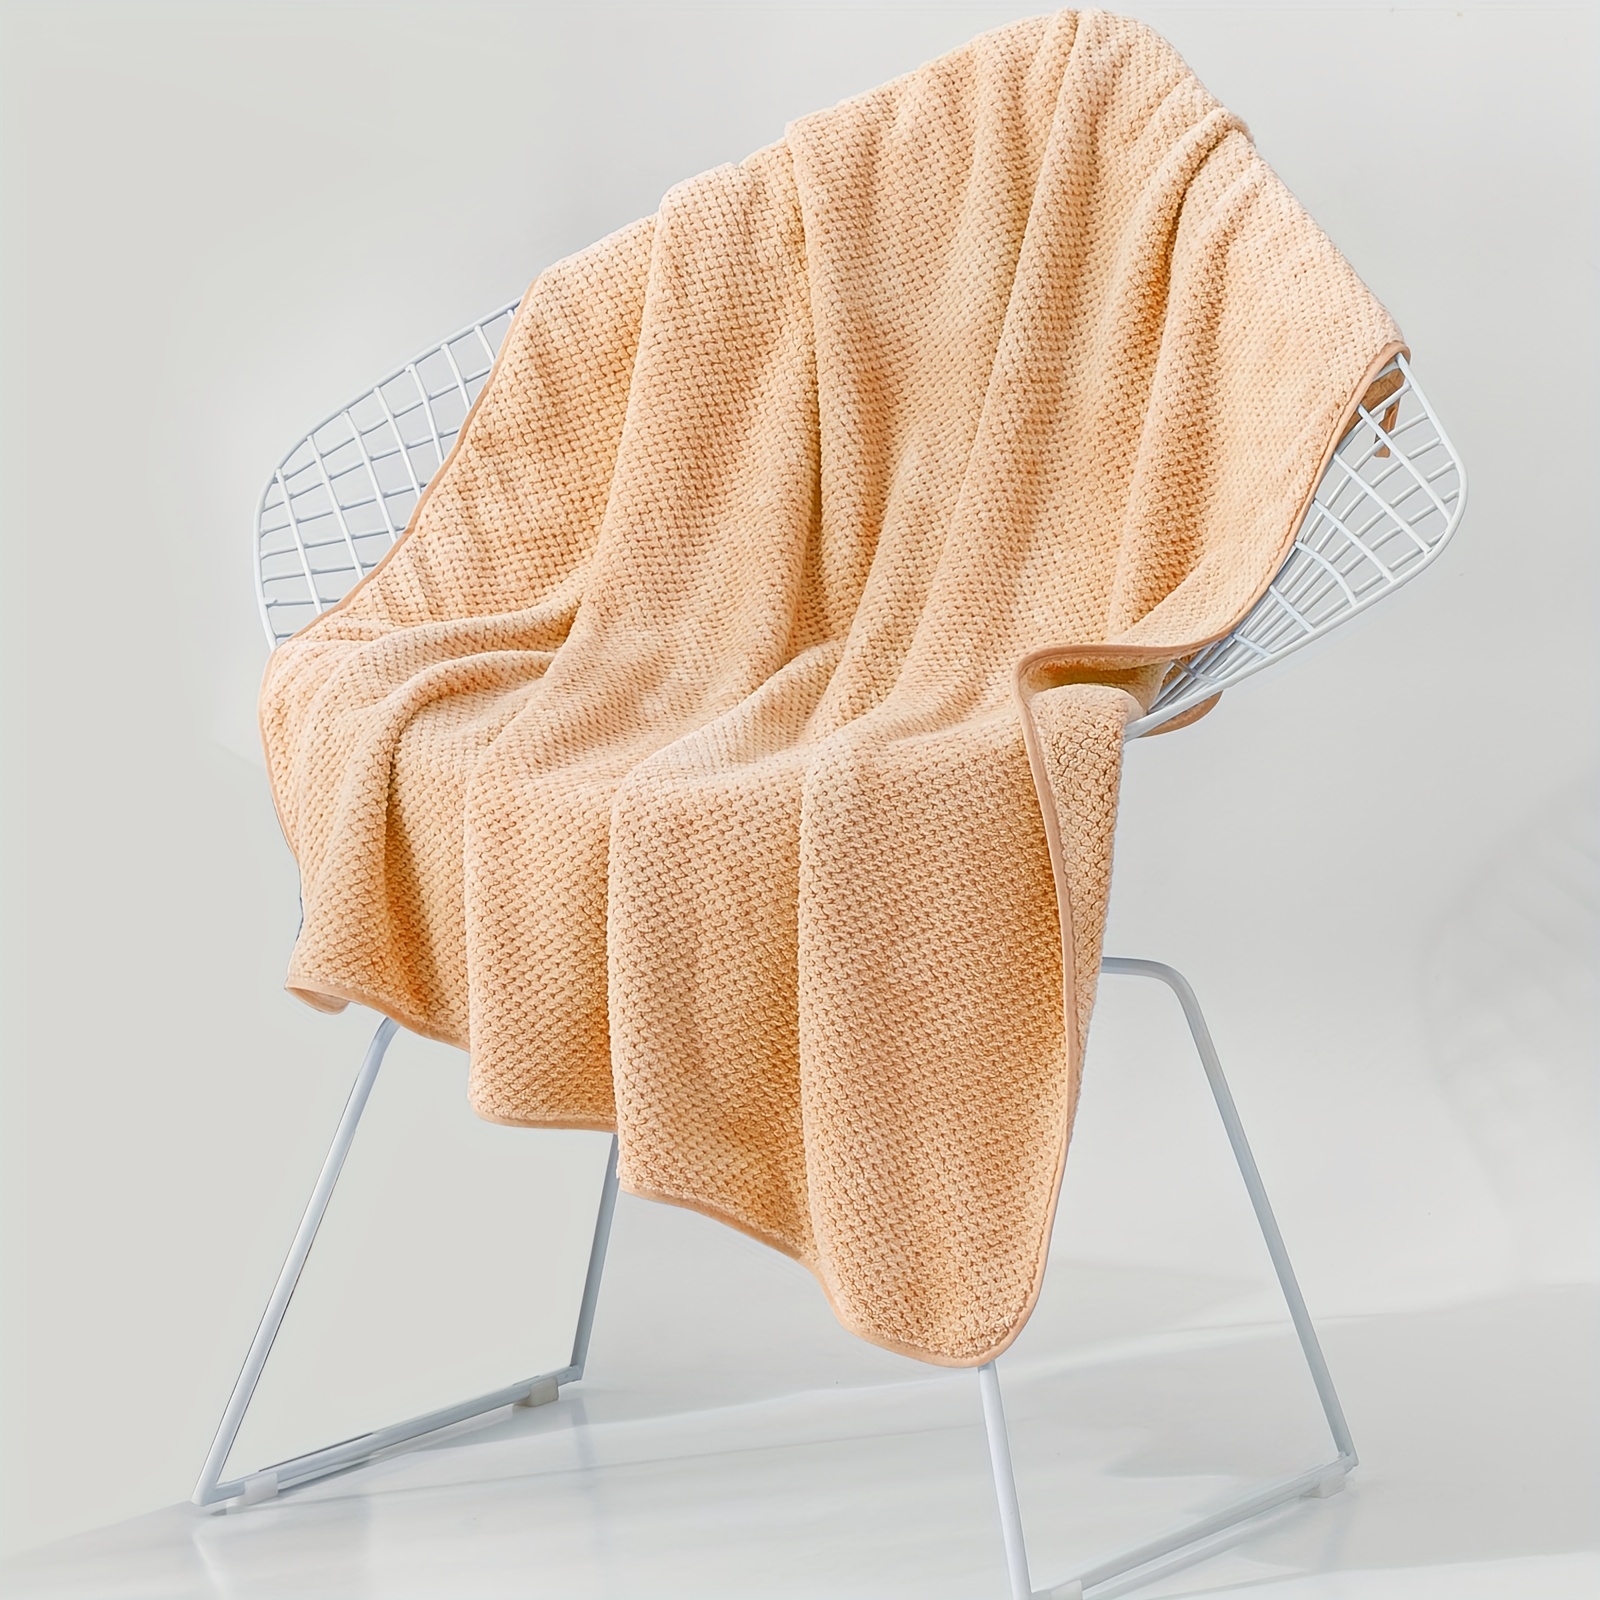  WFS Juego de toallas de ducha de 3 piezas Toallas de baño de  microfibra de alta calidad, altamente absorbentes, toallas de baño, playa,  gimnasio, toallas de baño (color: azul+marrón y gris) 